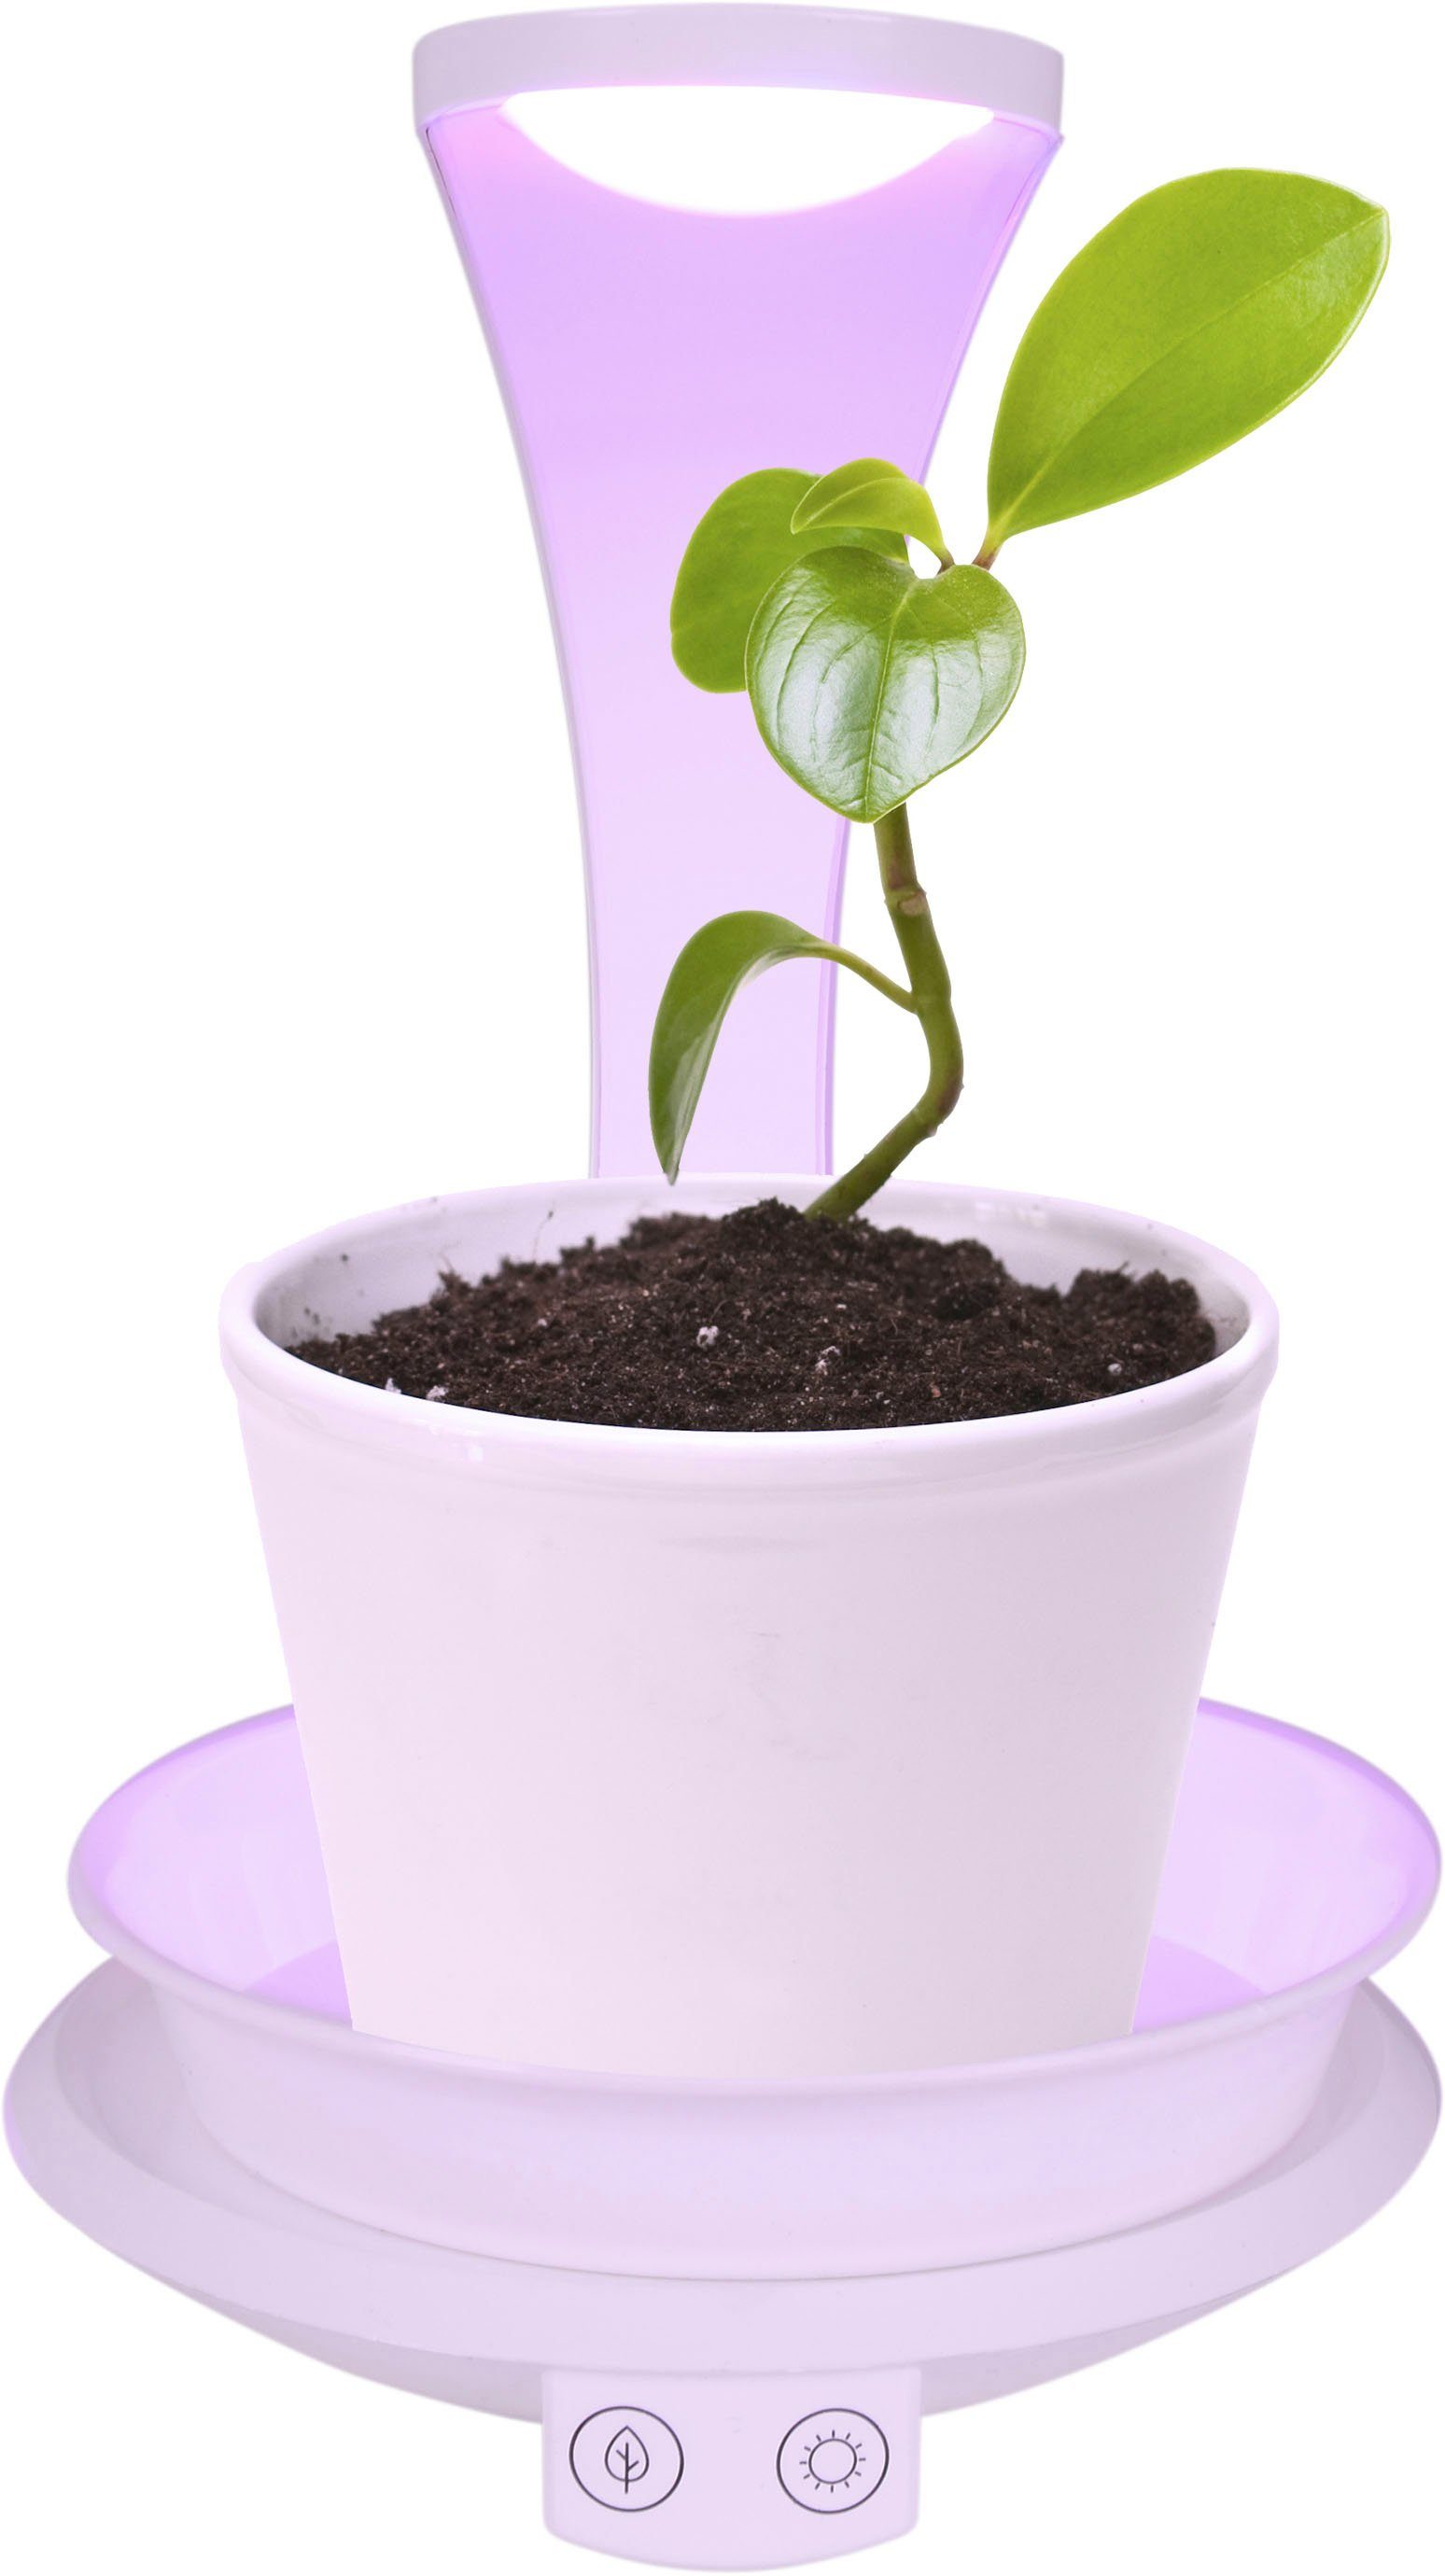 Tischleuchte Grow mit fest und USB-Anschluss LED Wachstumsleuchte, Ladefunktion, (lila) Neutralweiß, näve Neutralweiß, integriert, LED Pflanzenlicht Light, USB-Kabel